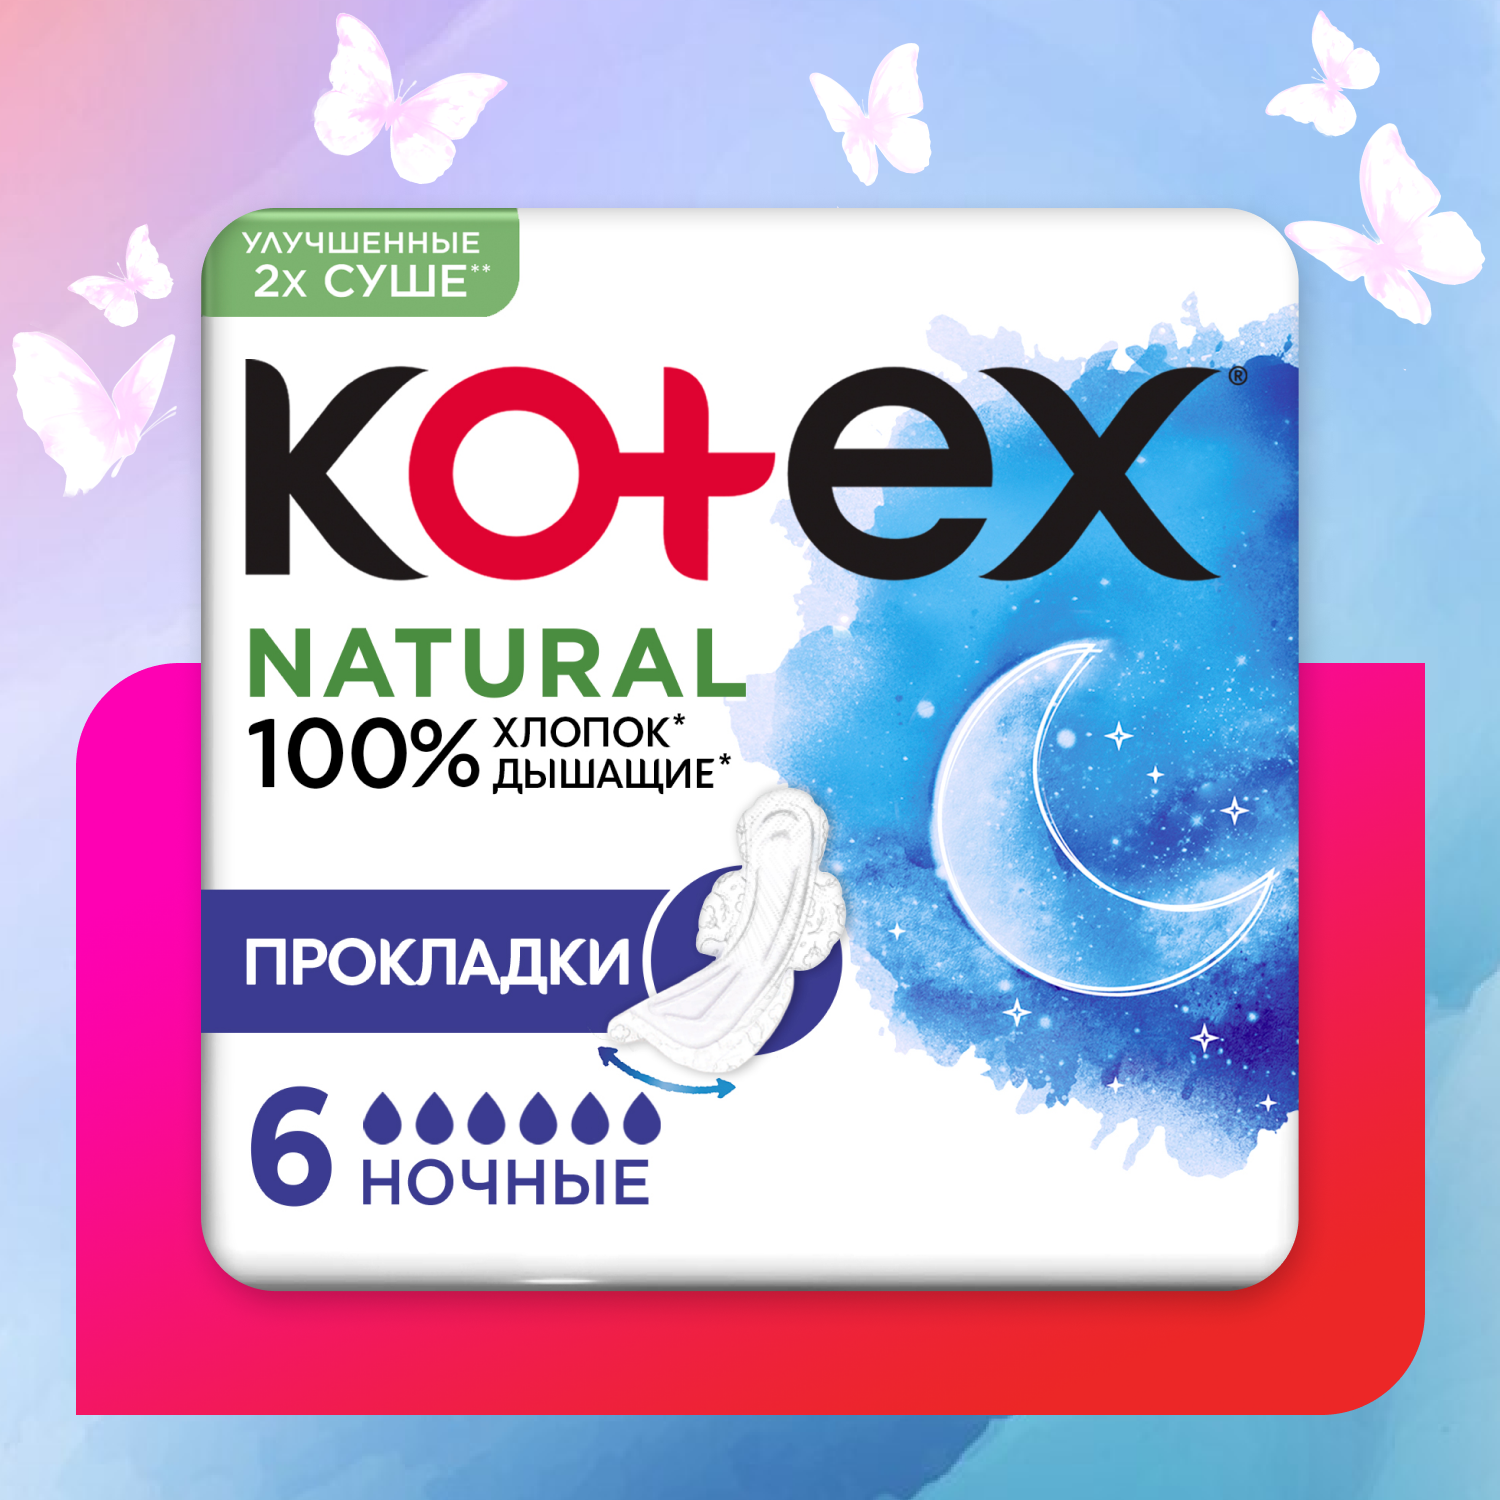 Kotex прокладки Natural ночные 6 капель